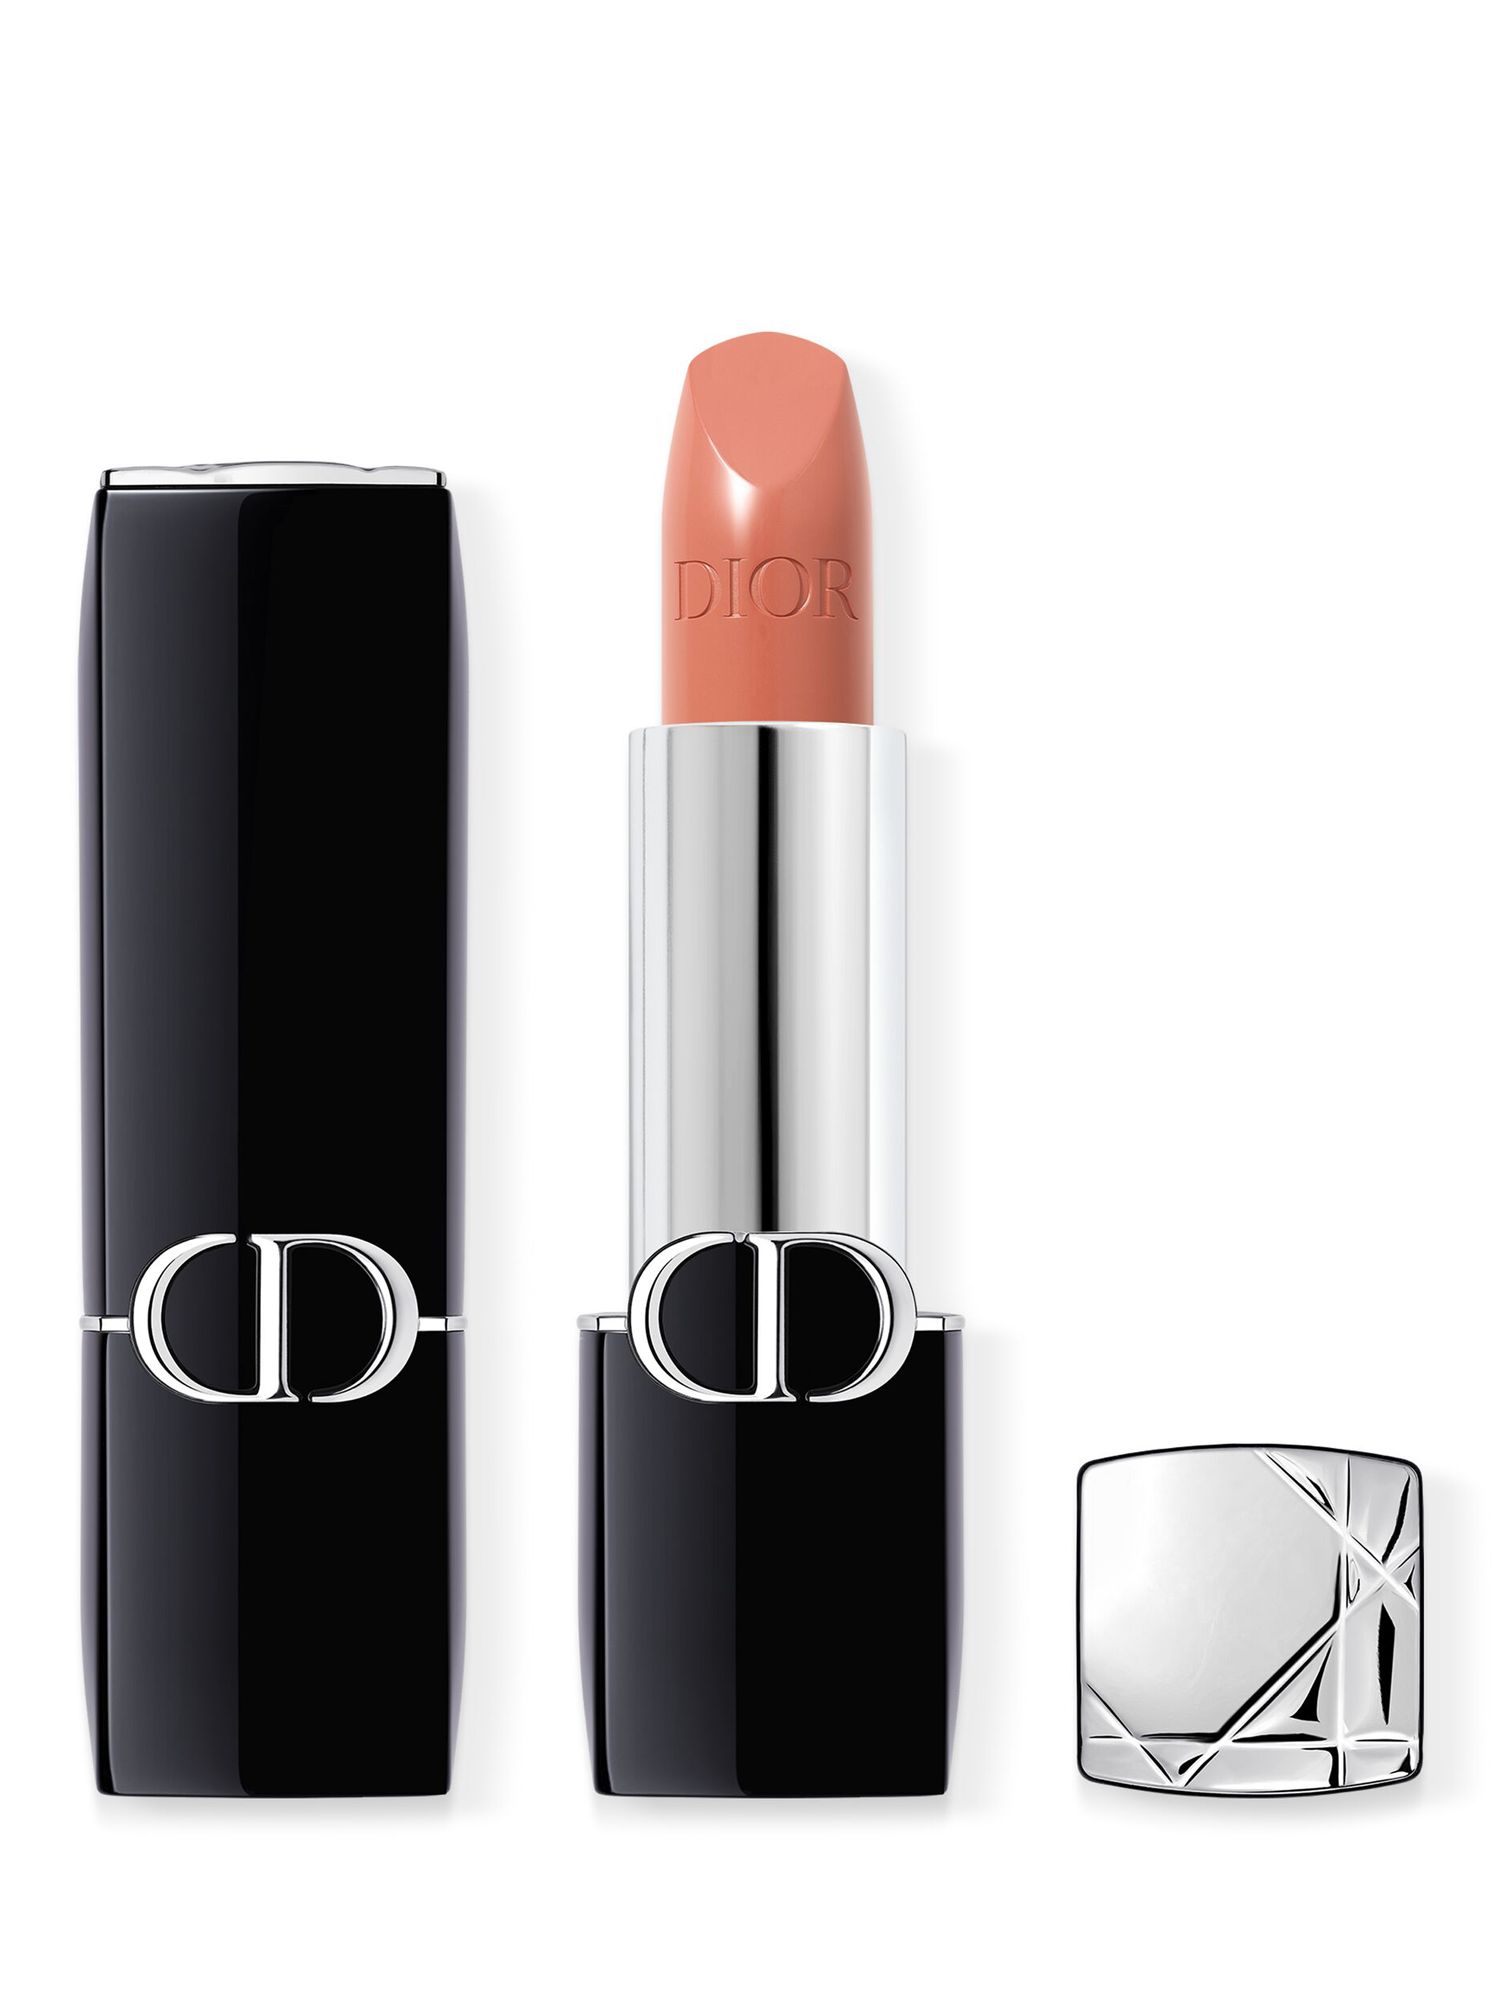 DIOR Rouge Dior Couture Colour Lipstick - Satin Finish, 219 Rose Montaigne 1